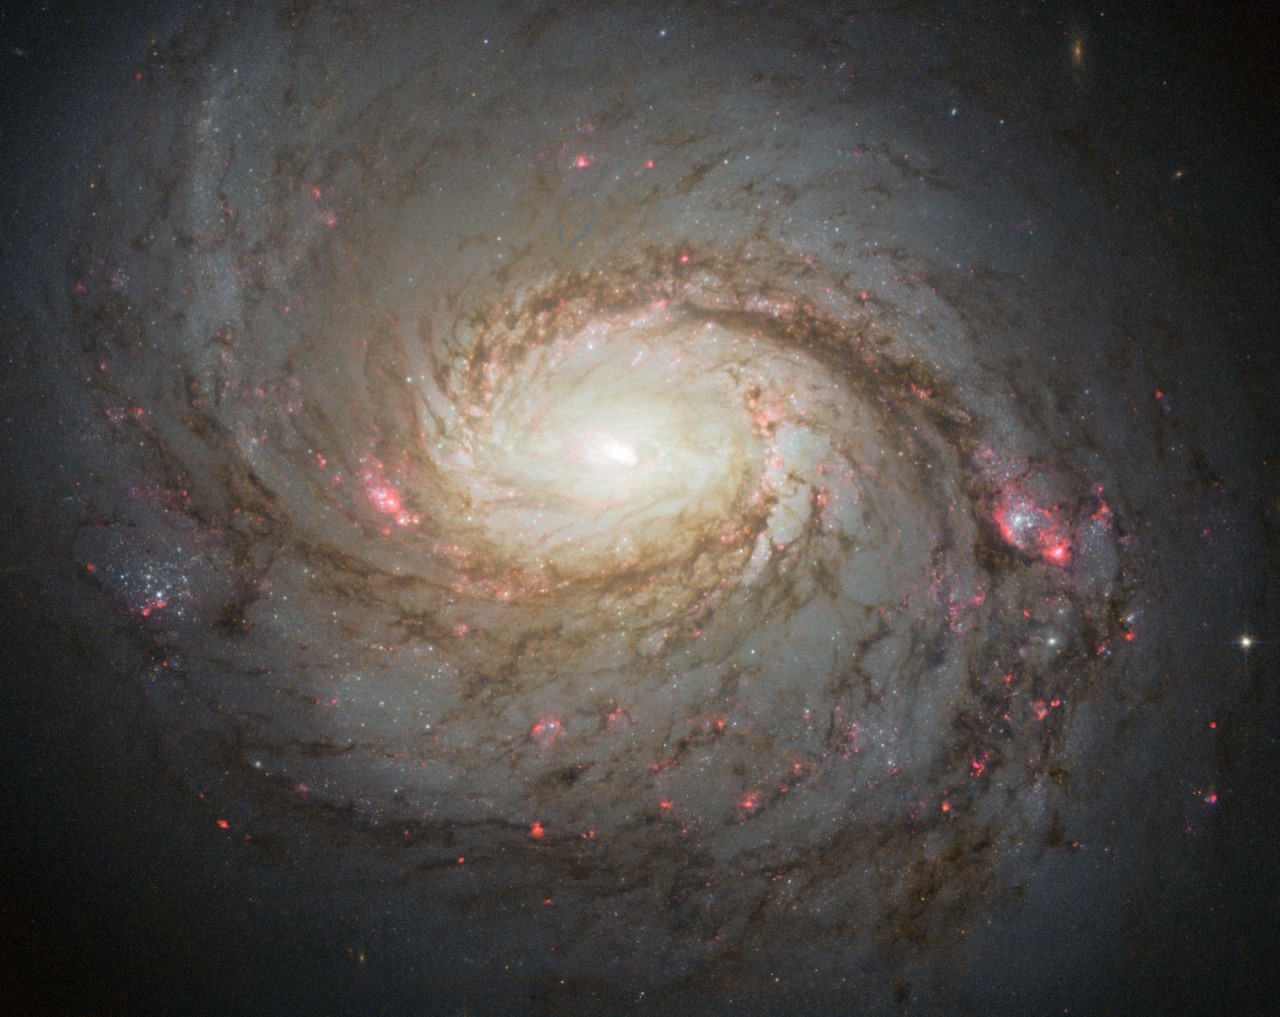 La Galaxia del Calamar observada por el Hubble